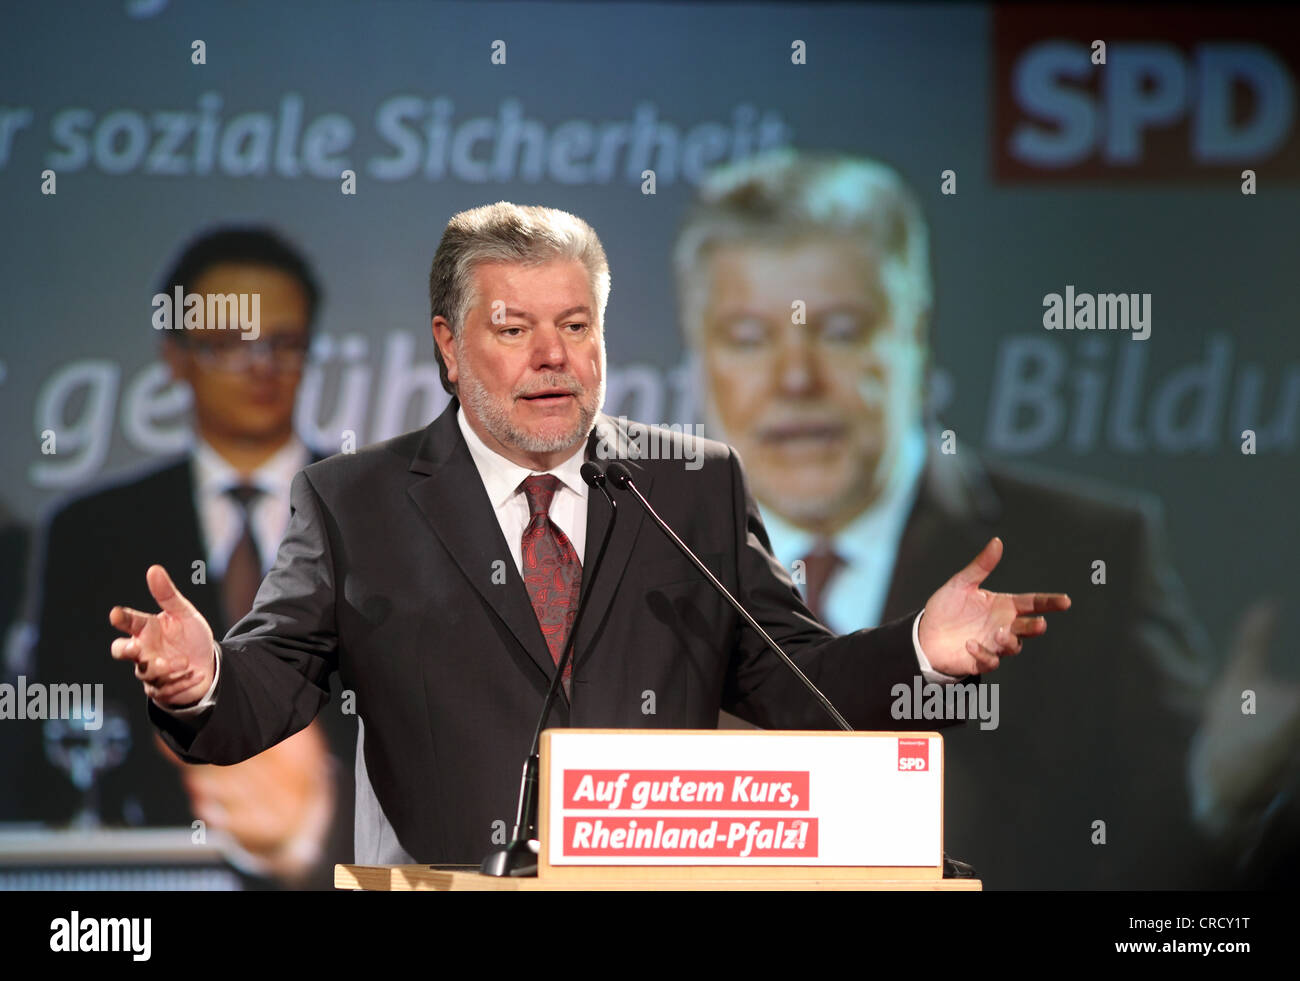 Kurt Beck, primo ministro della Renania Palatinato, SPD, il partito socialdemocratico, parlando nel corso di una campagna elettorale in a Bendorf Foto Stock